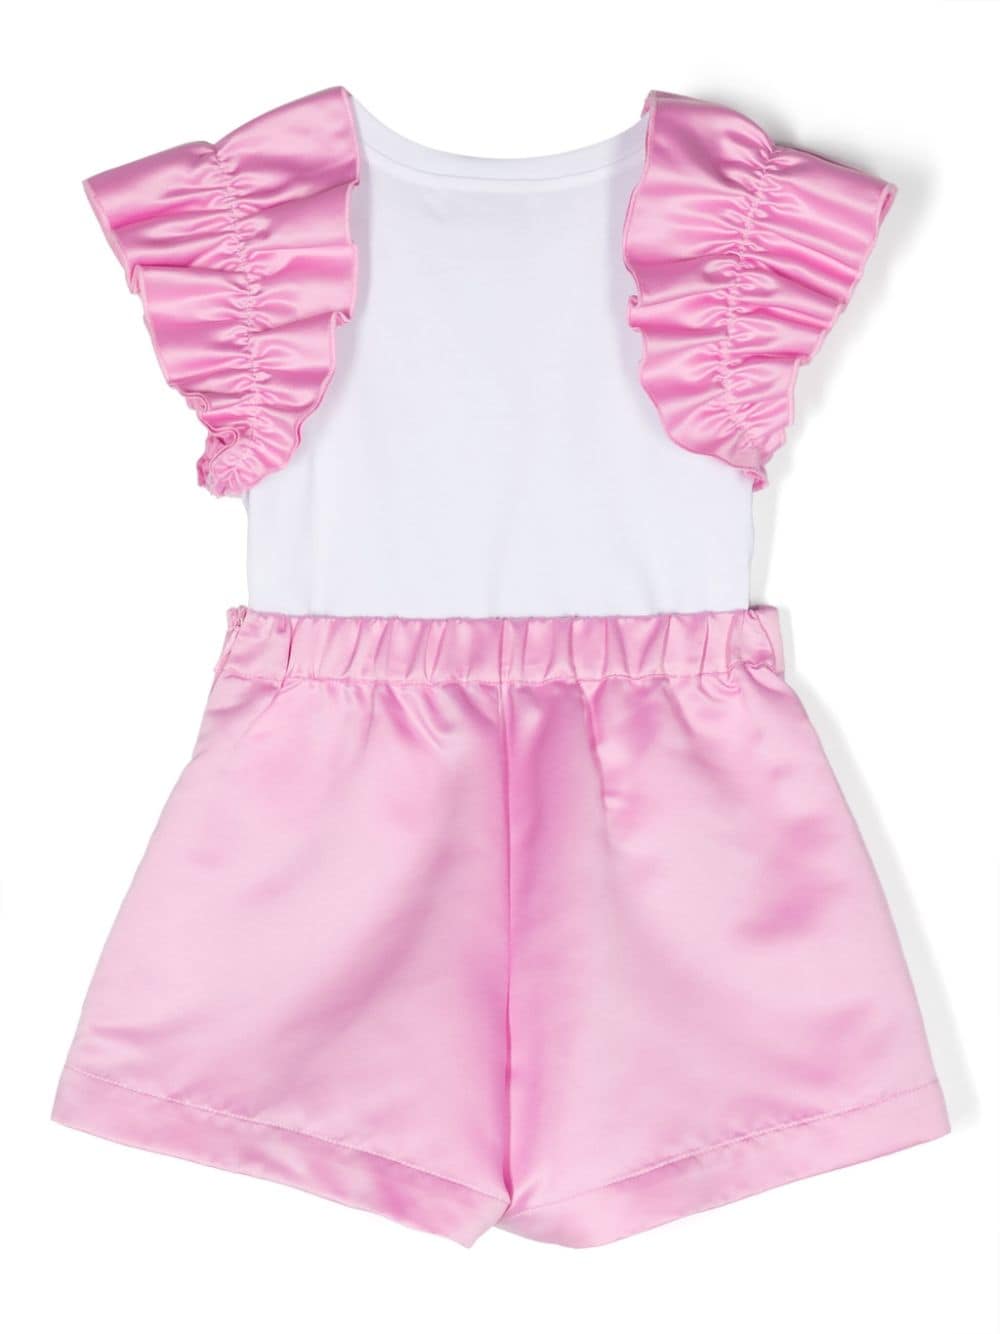 Completo elegante bianco e rosa per bambina